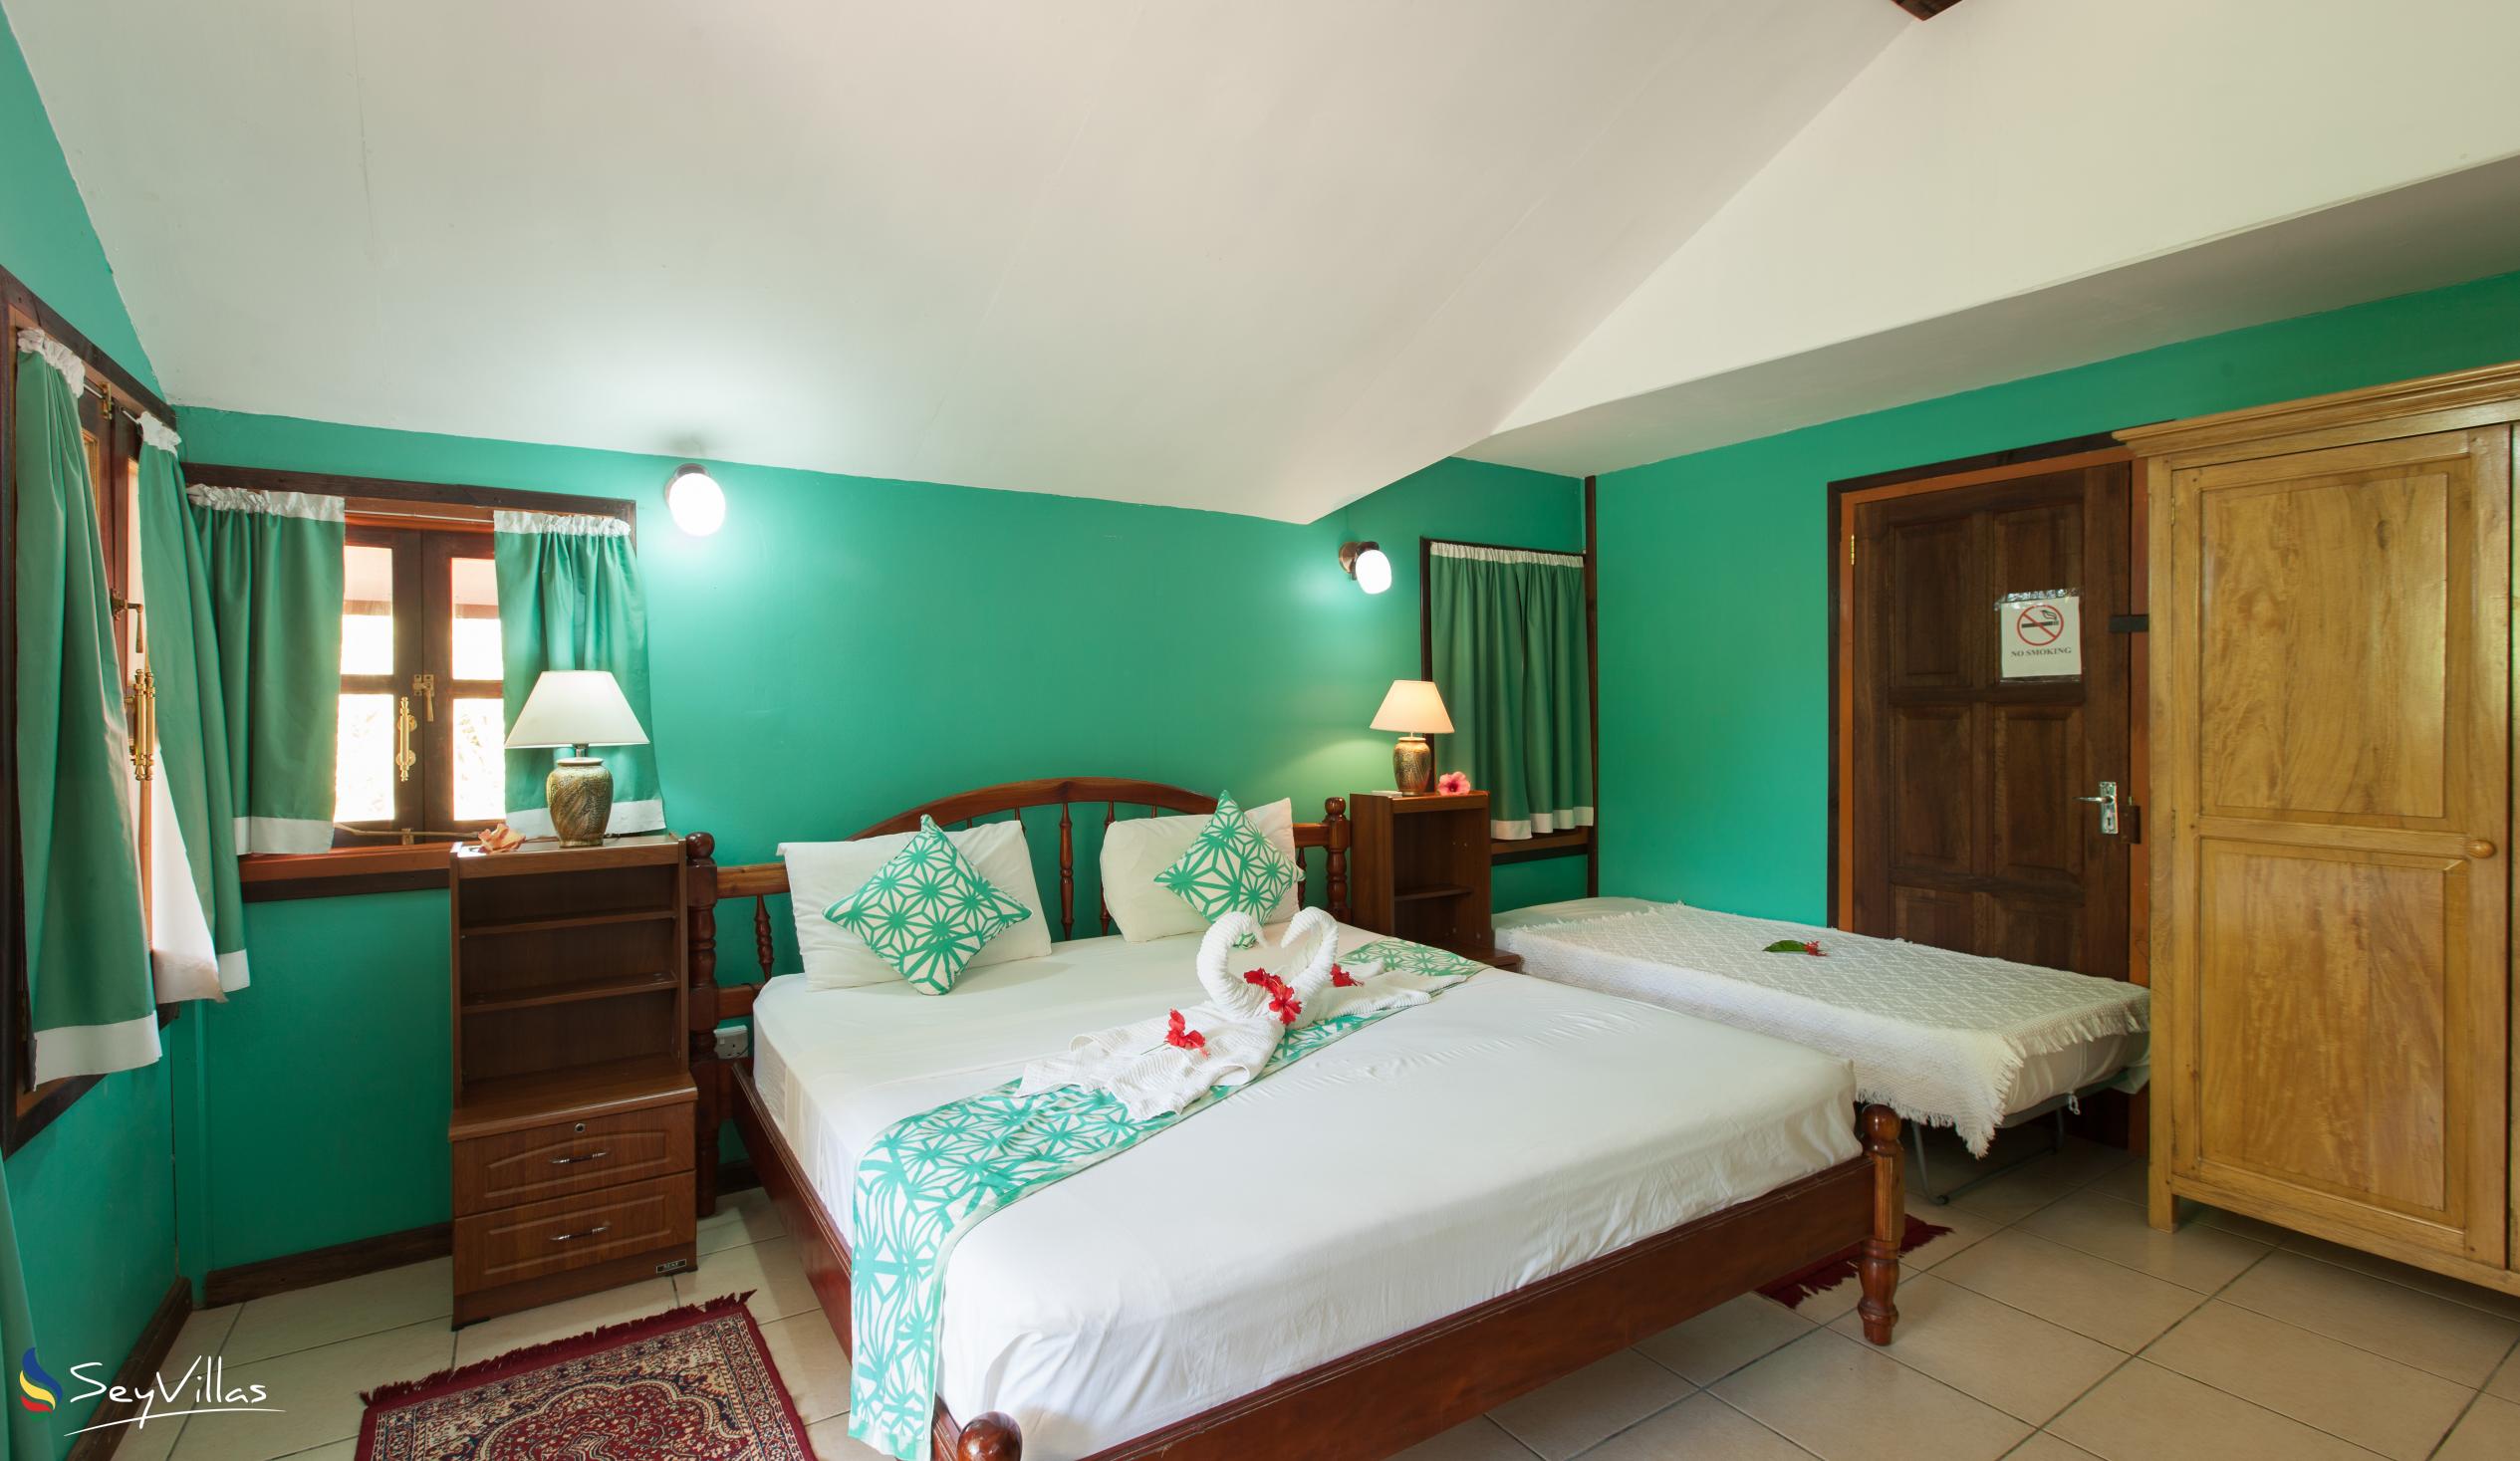 Photo 50: Belle des Iles Guest House - Double Room with Balcony - La Digue (Seychelles)